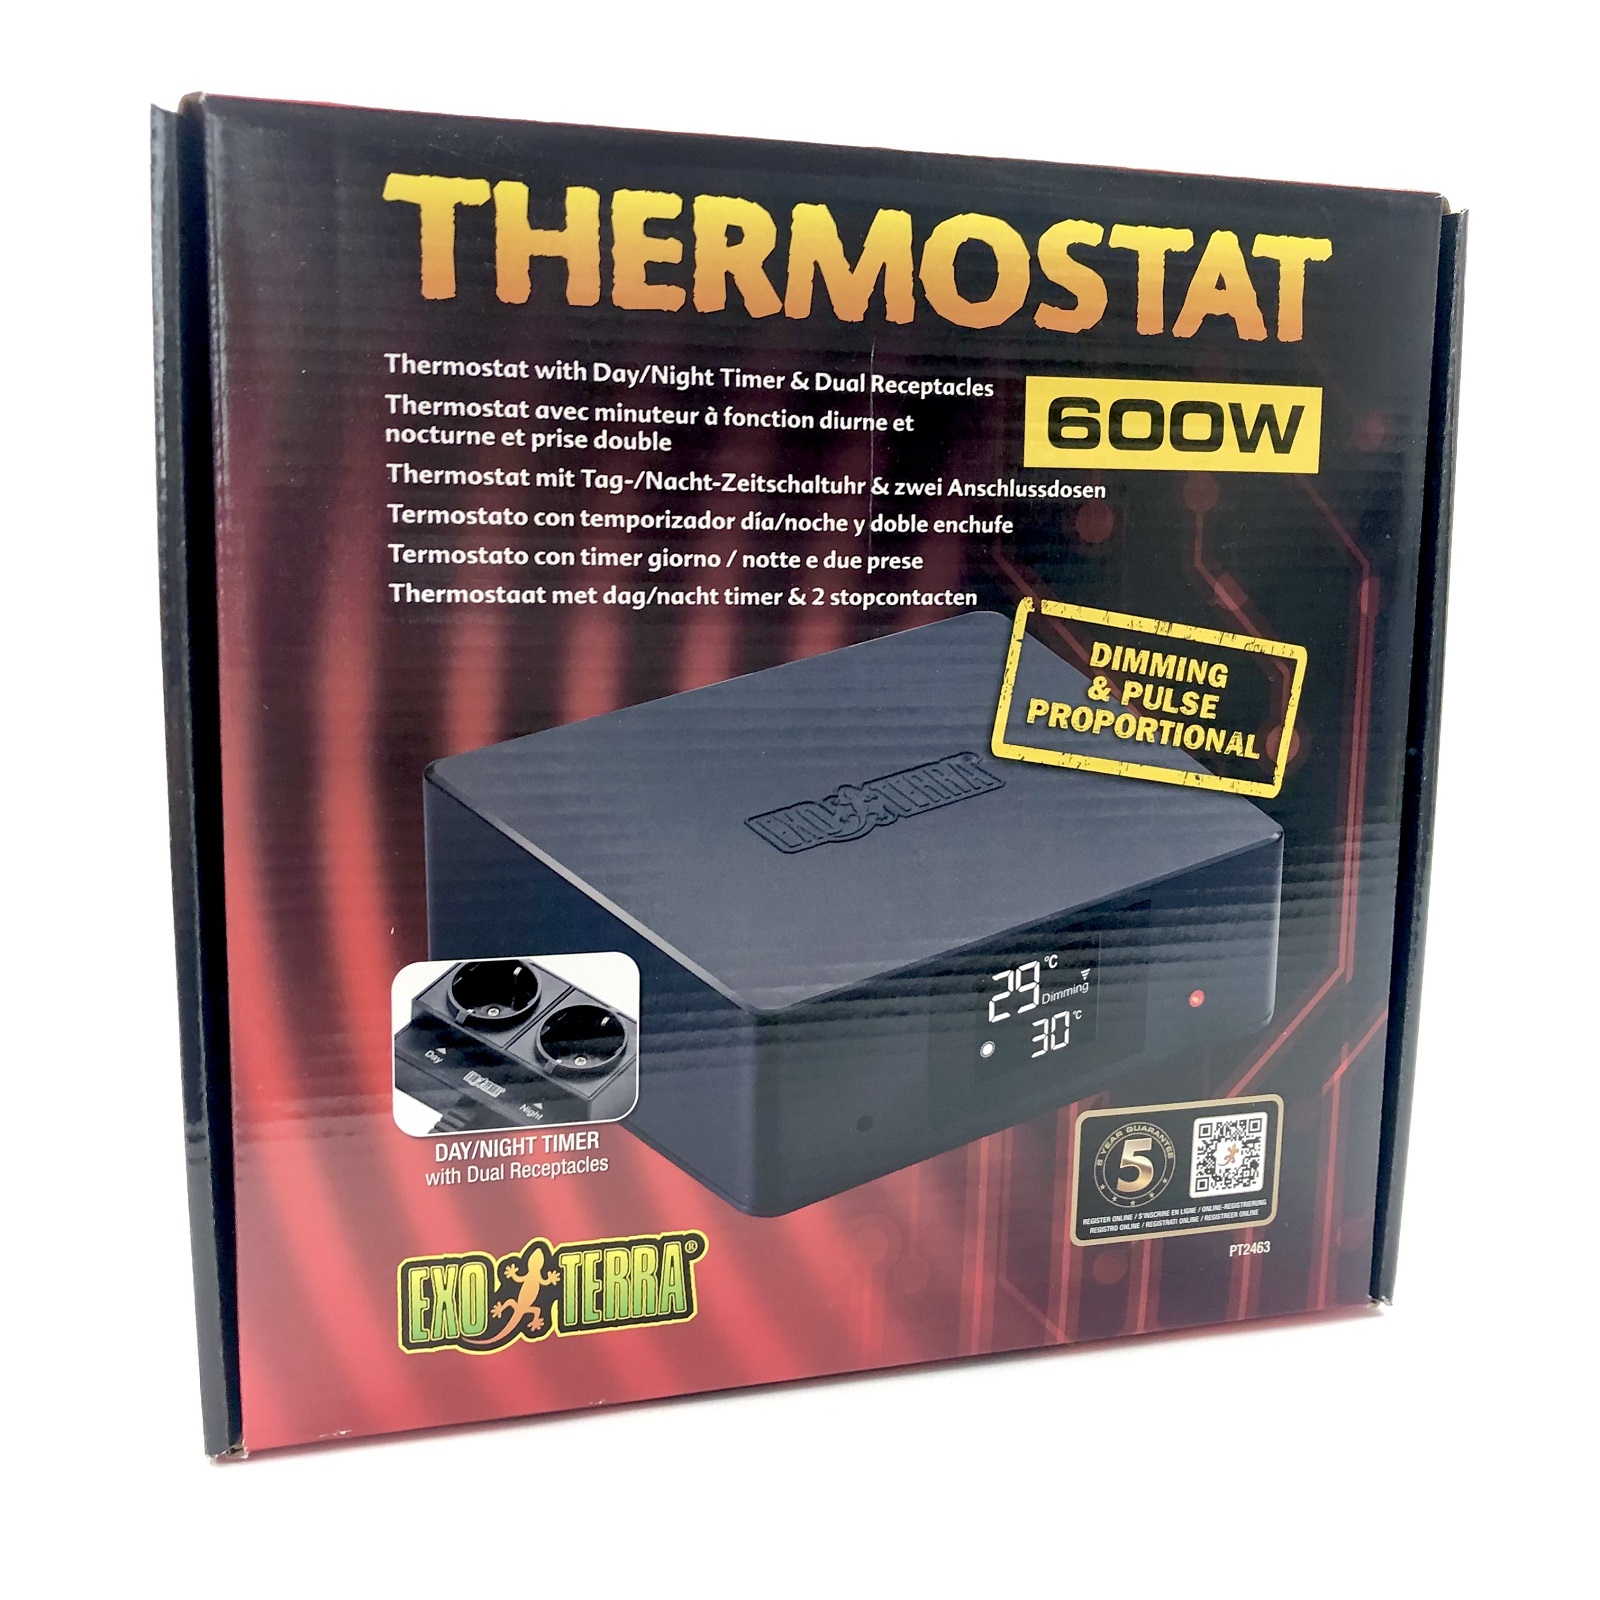 https://www.terraristikladen.de/media/image/08/bc/72/thermostst-terrarienthermostat-pt2463.jpg